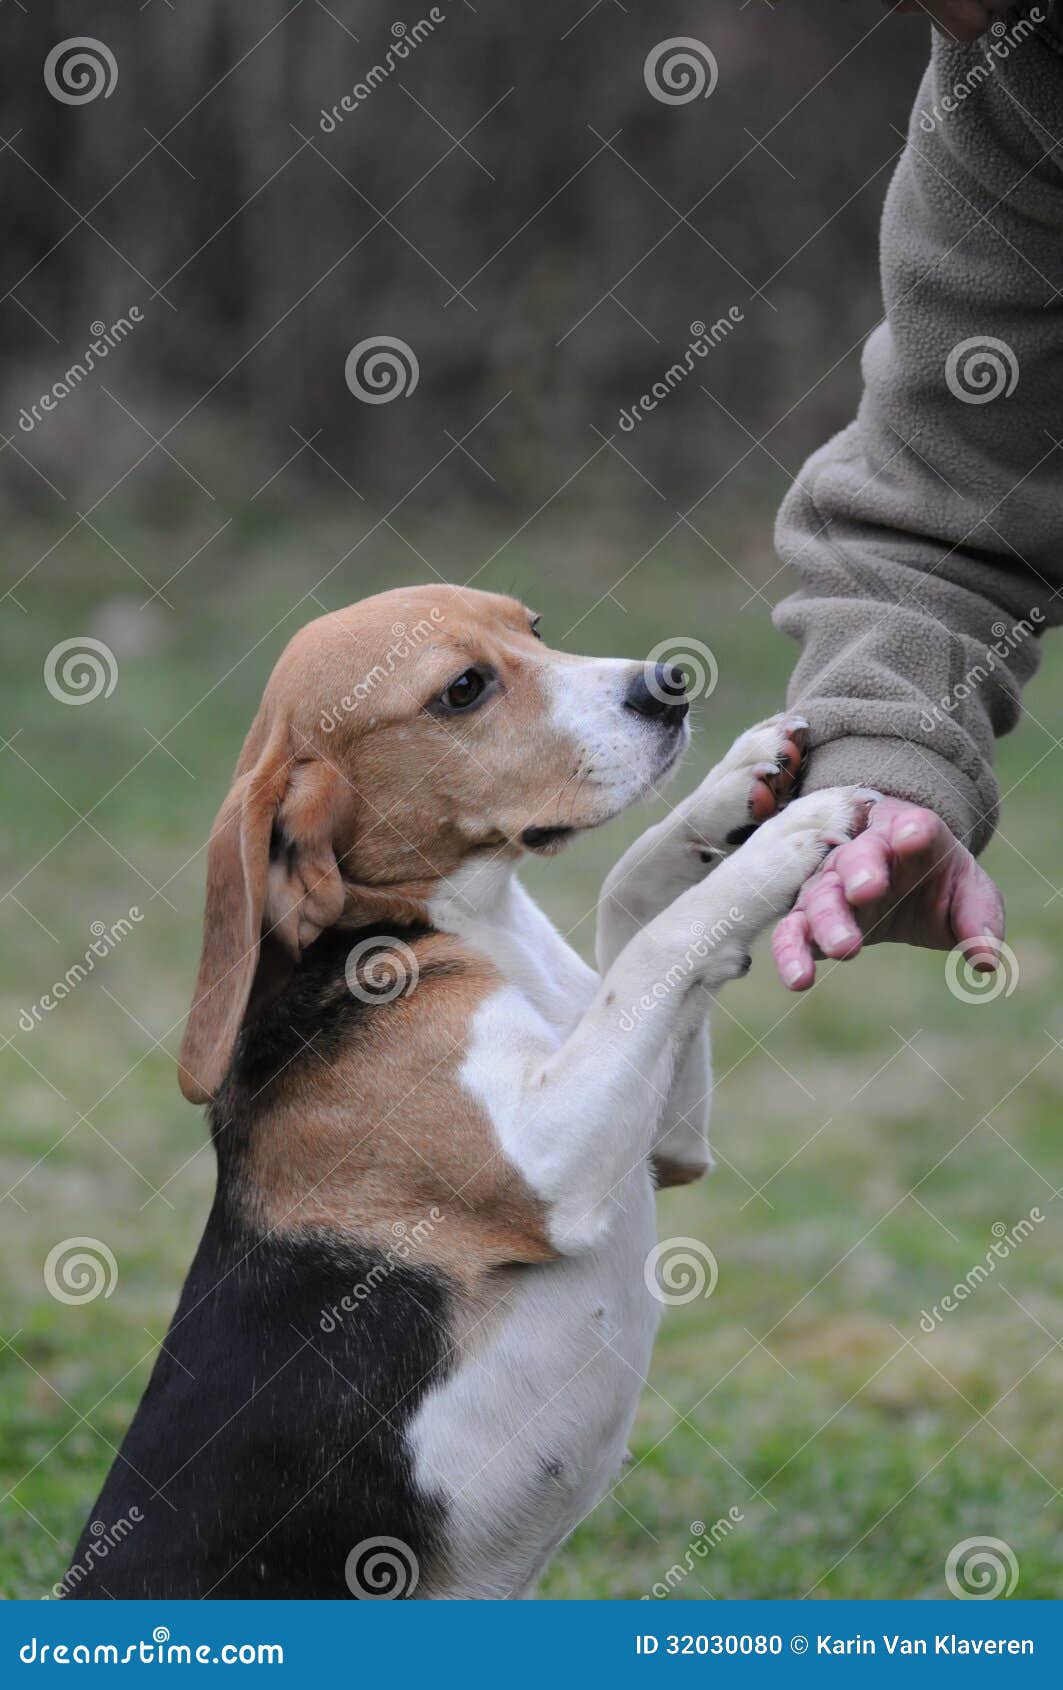 Pet Owner Training Beagle Dog Stock Photo - Image: 32030080